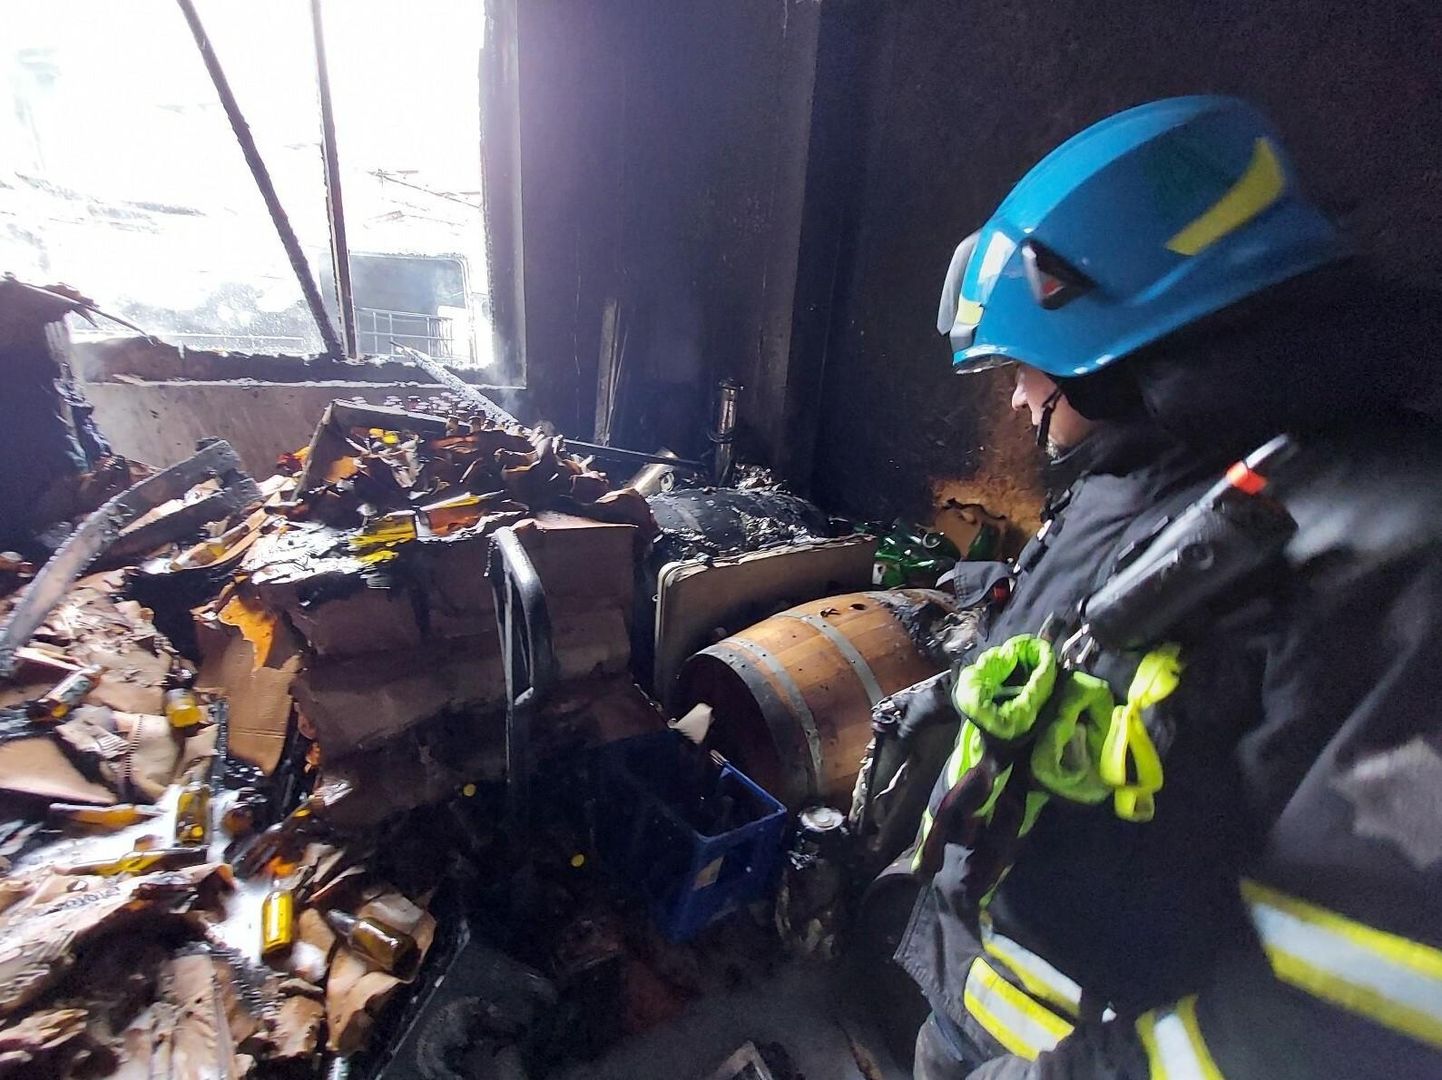 Päästetöötaja silmitses pärast põlengu kustutamist pruulikoja ruumes tulekahju hävitustöö tagajärgi. Keskel on üks tammevaatidest, milles laagerdunud kesvamärg sai tugevalt suitsuse doosi.